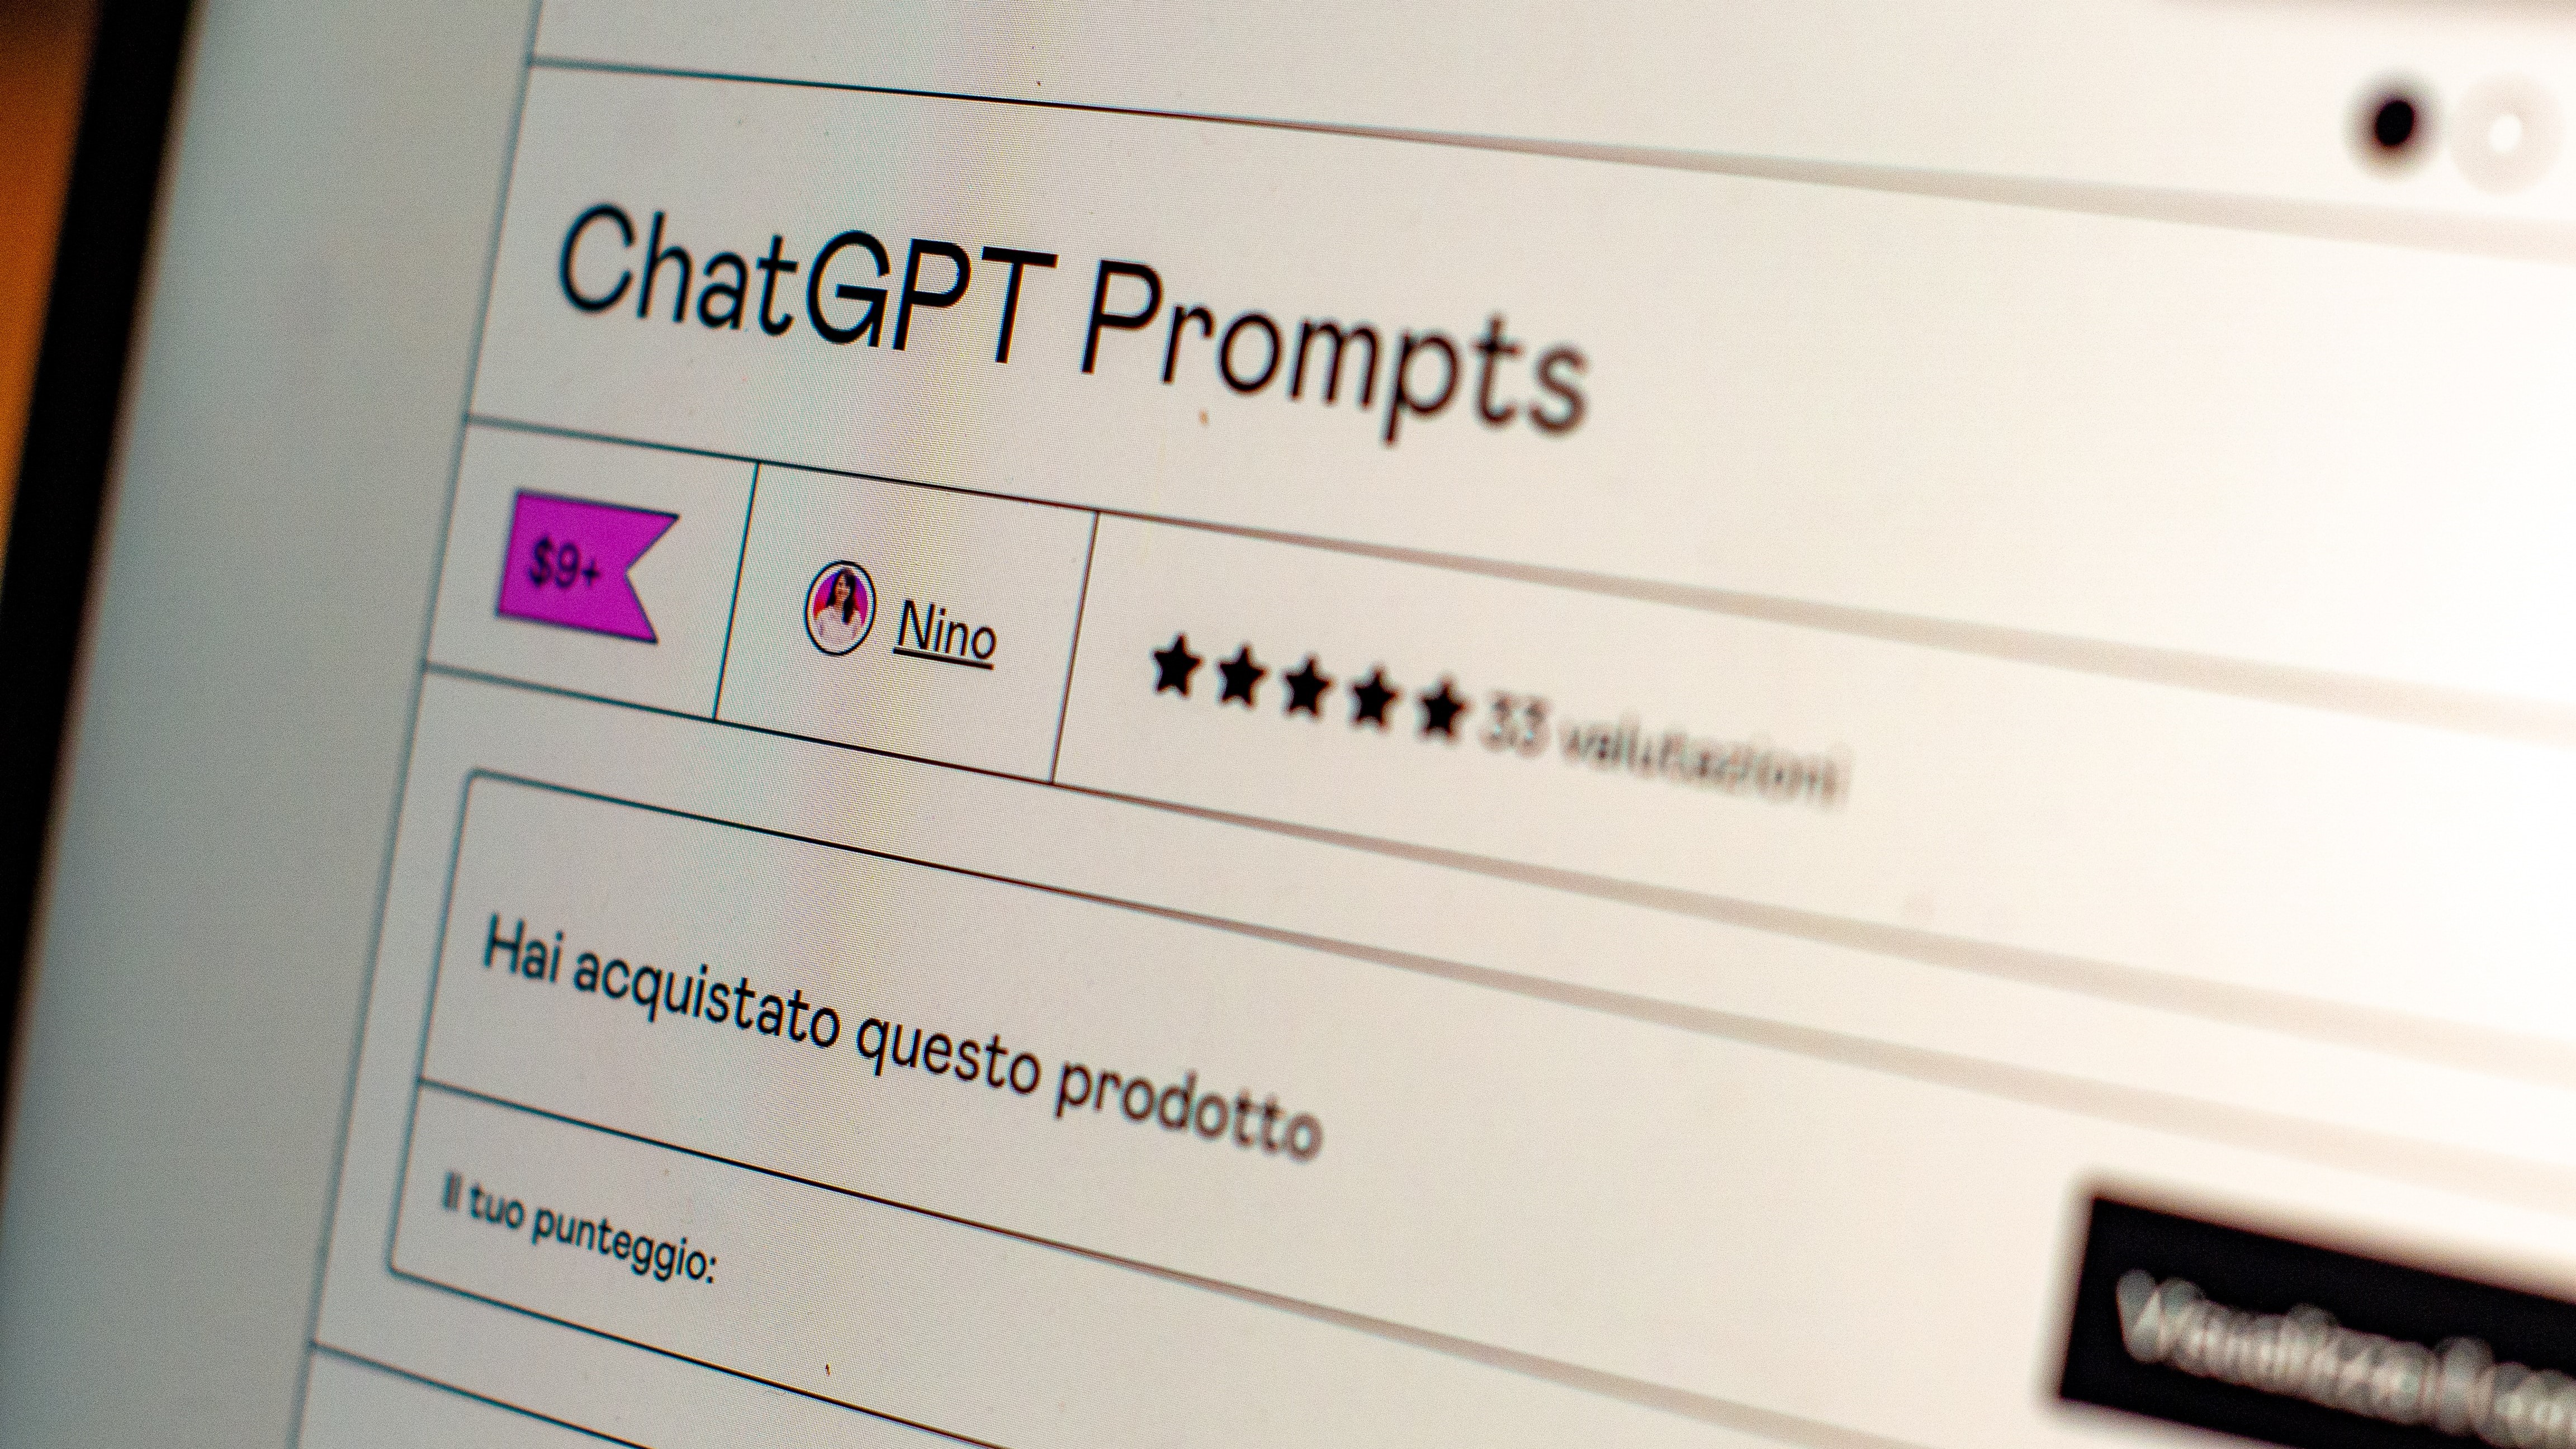 Itália bane ChatGPT: entenda por que chatbot foi proibido e se há